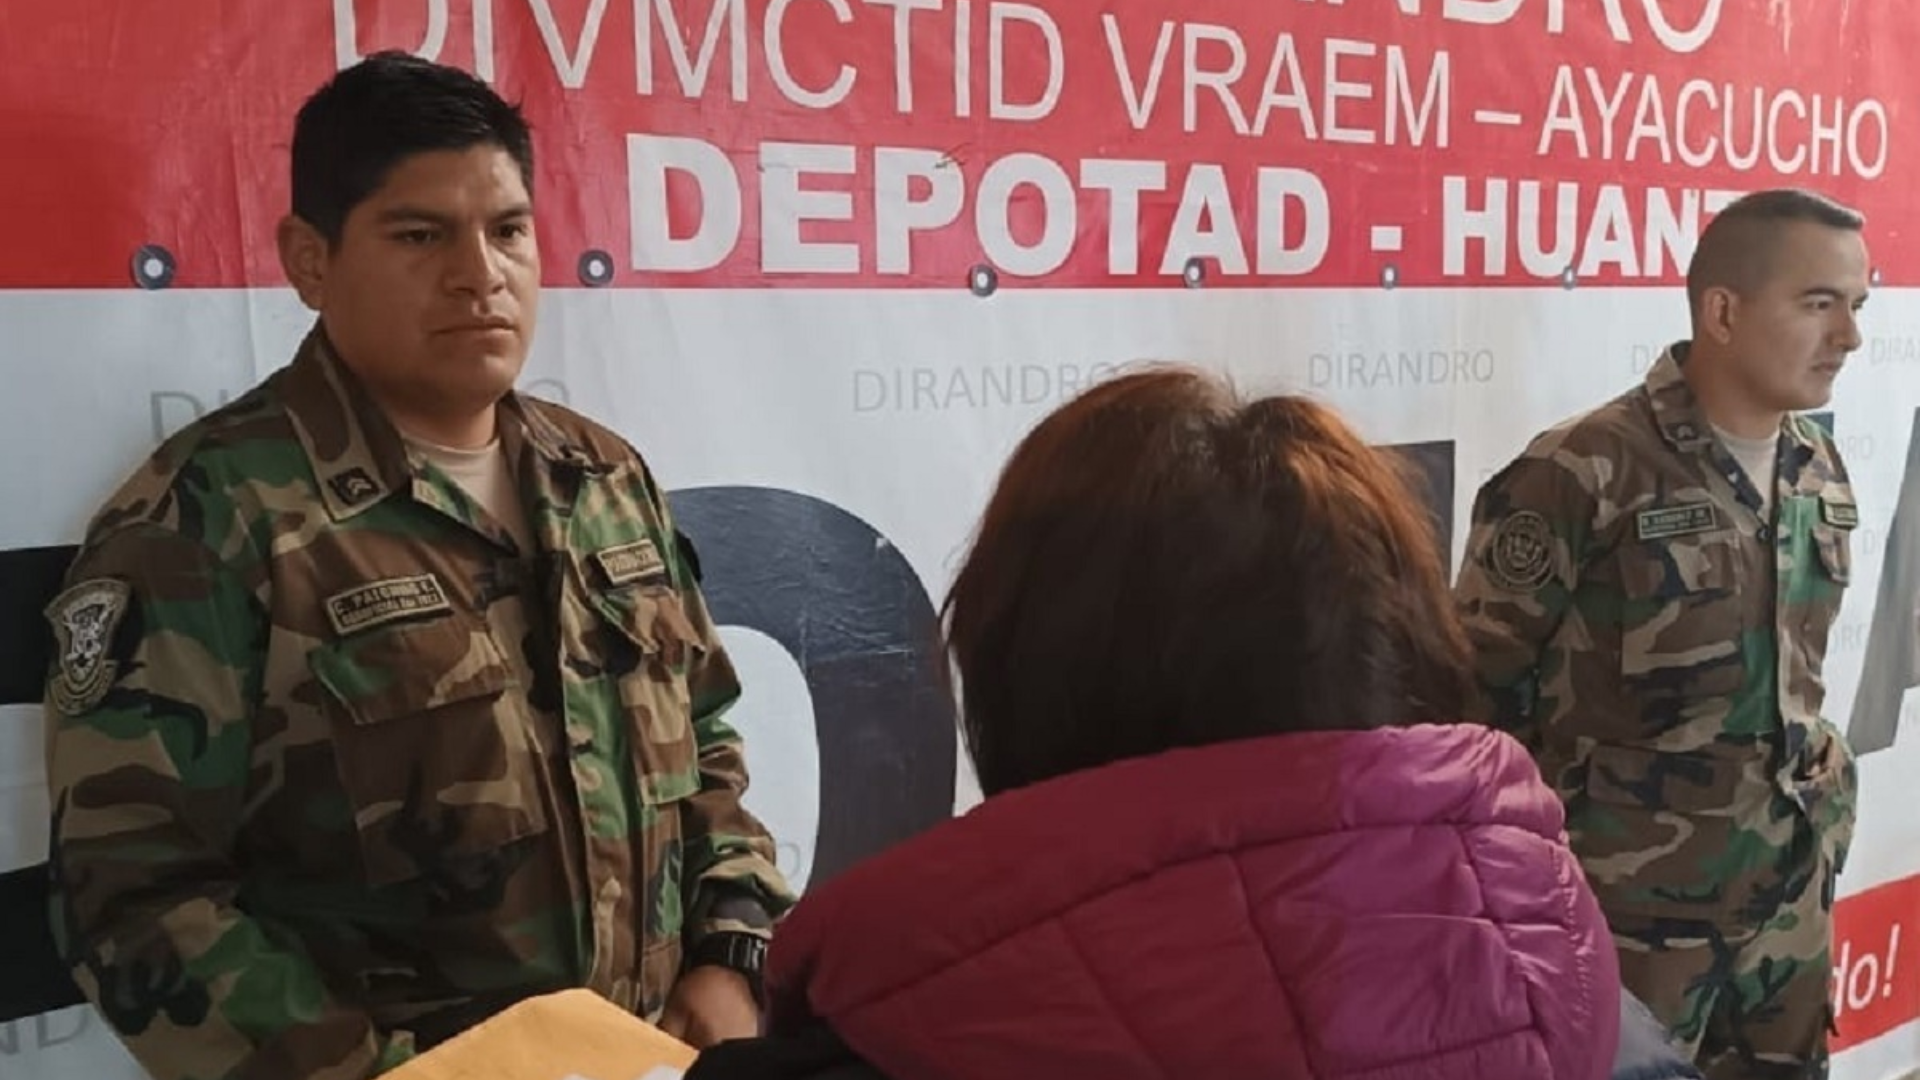 Fueron detenidos dos policías en Ayacucho | Distrito Fiscal de Ayacucho